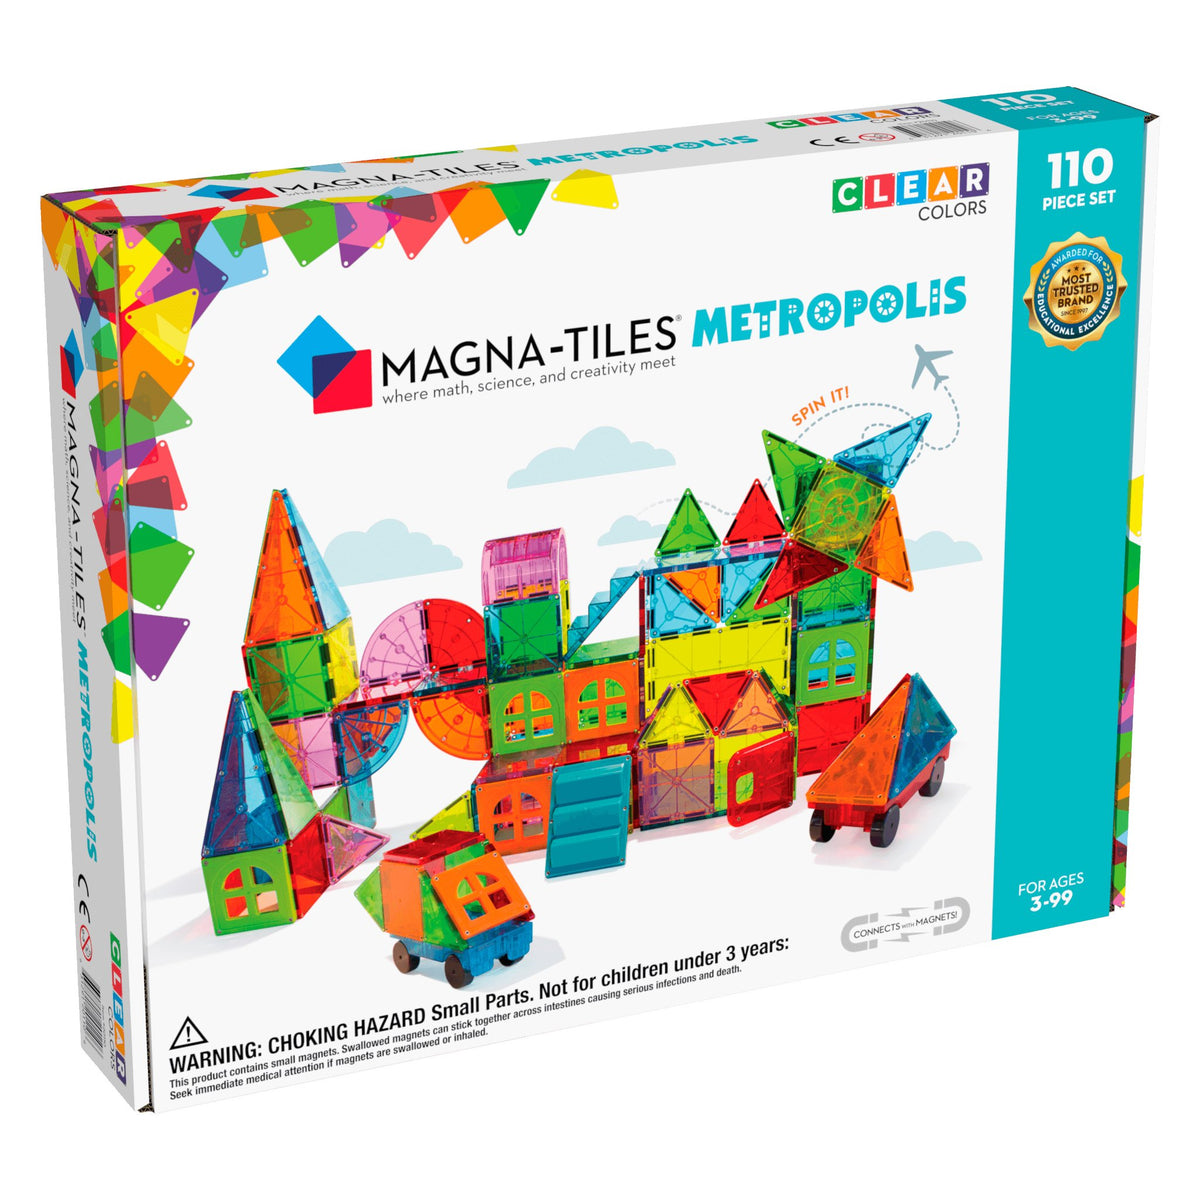 Magna-Tiles Tiles Metropolis 110-Piece Set